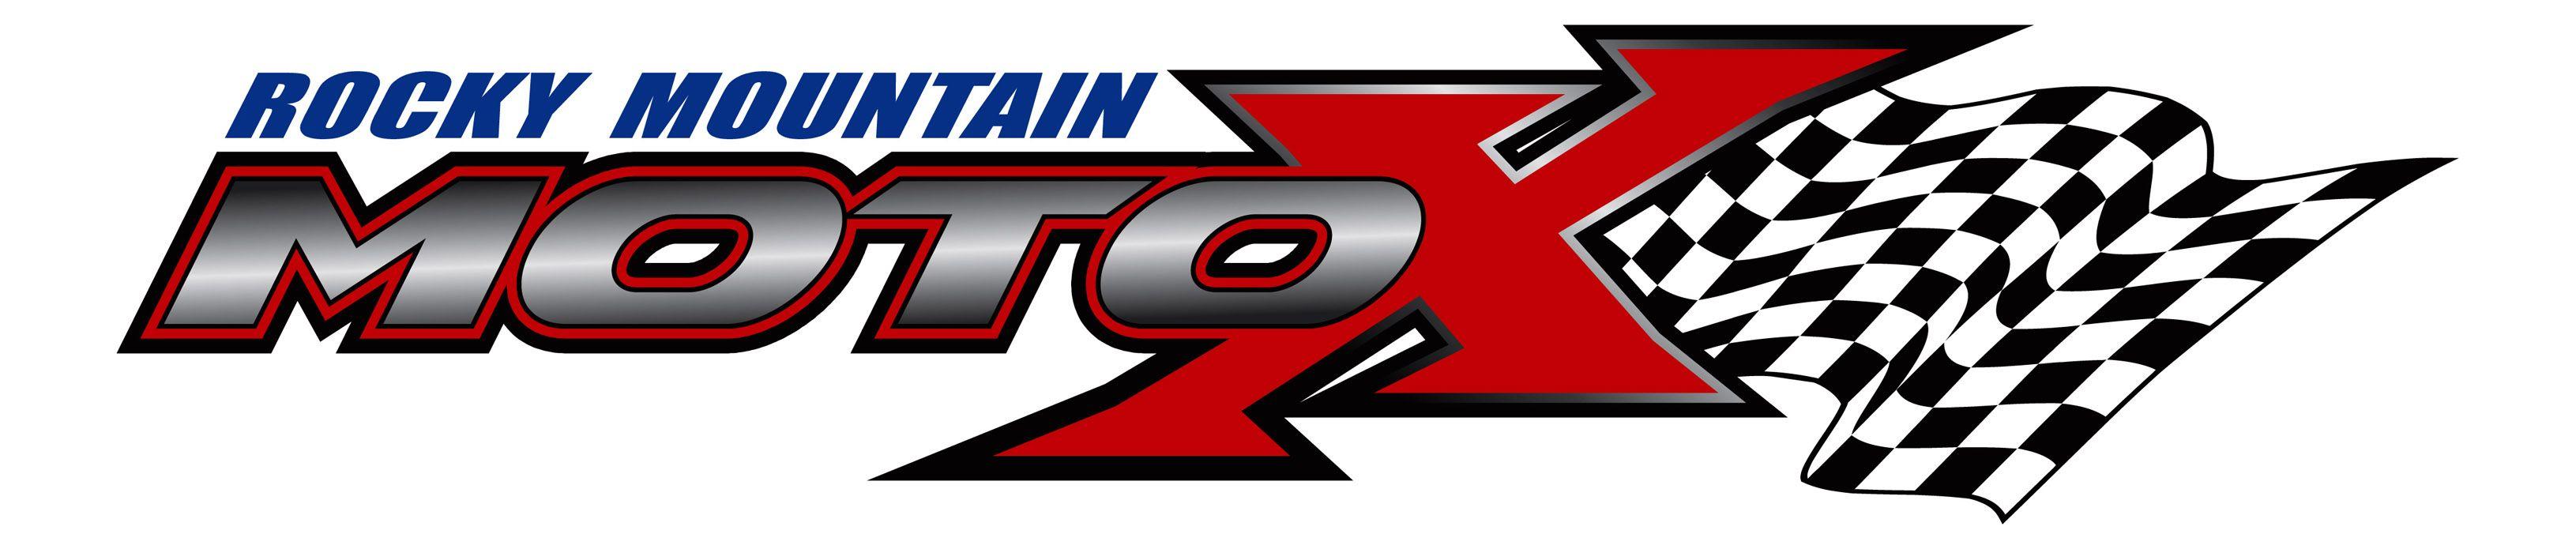 Dirt Racing Logo - Moto racing Logos